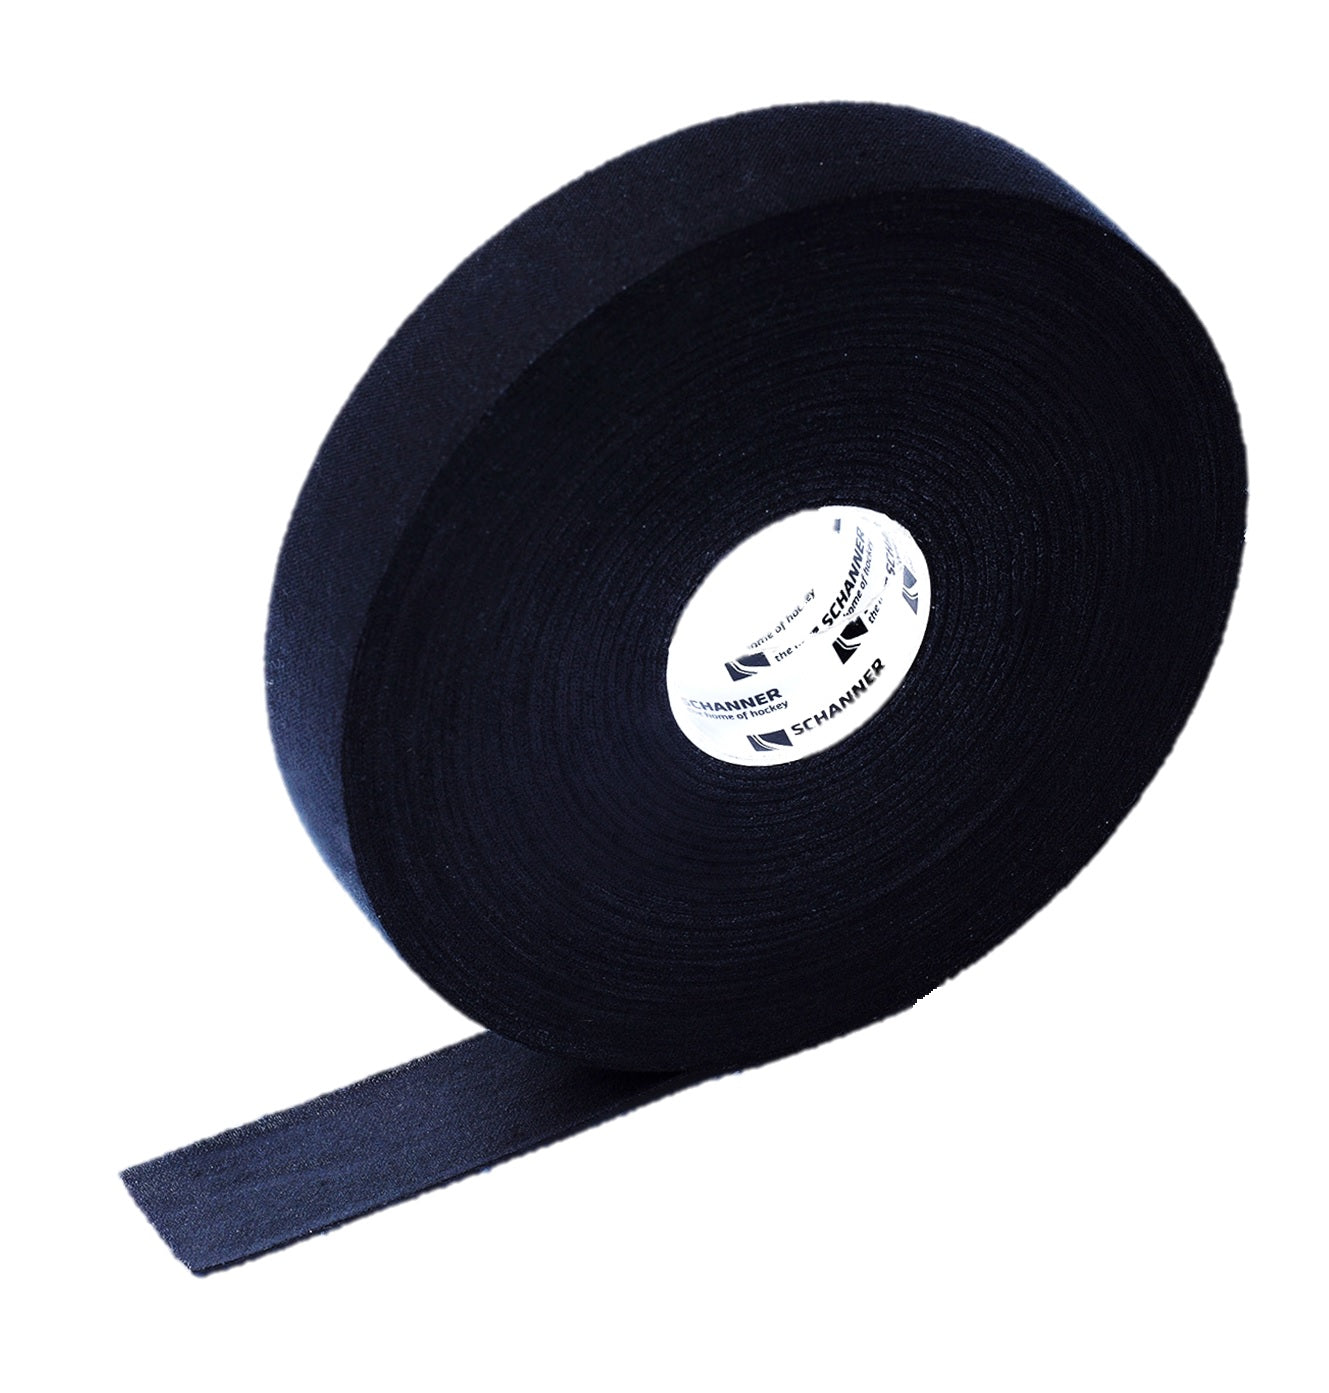 Eishockey Tape Schanner cloth Schlägertape 25mm x 50m schwarz